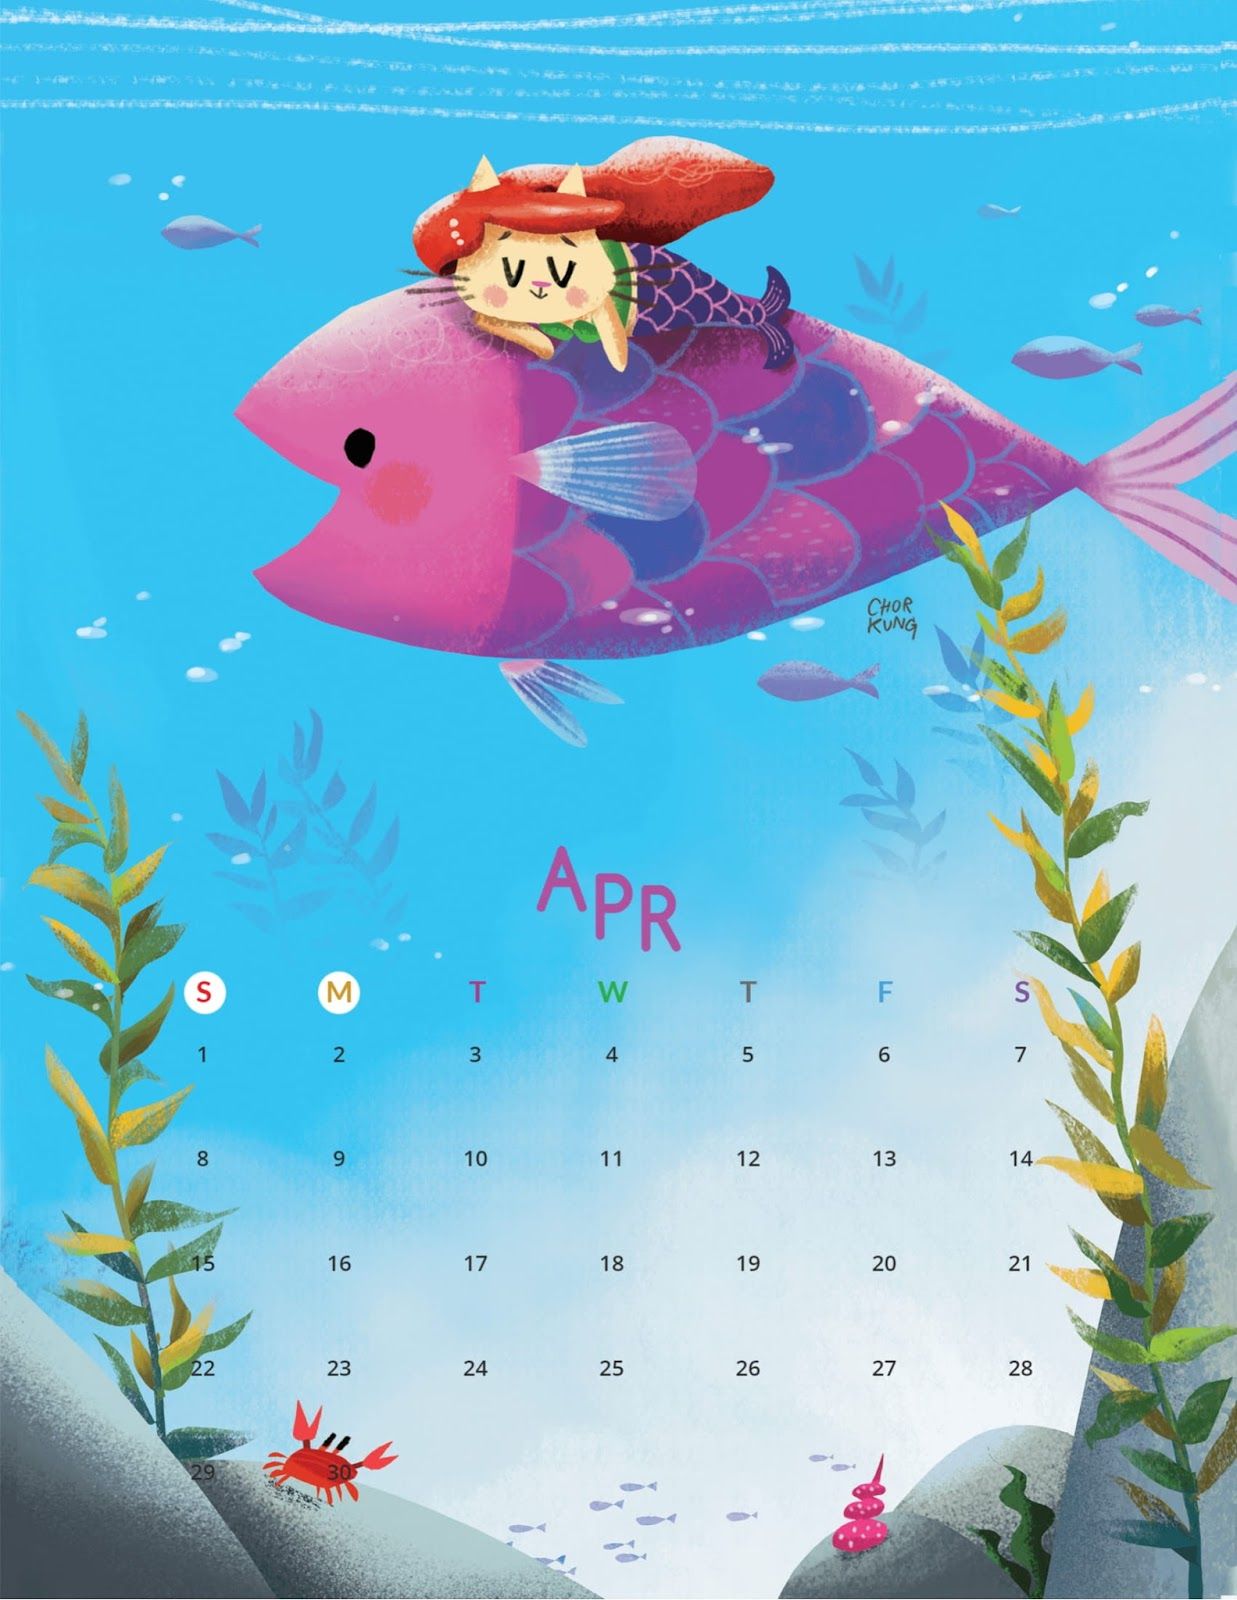 Cartoon Cat April 2018 Calendar with Monday as the first